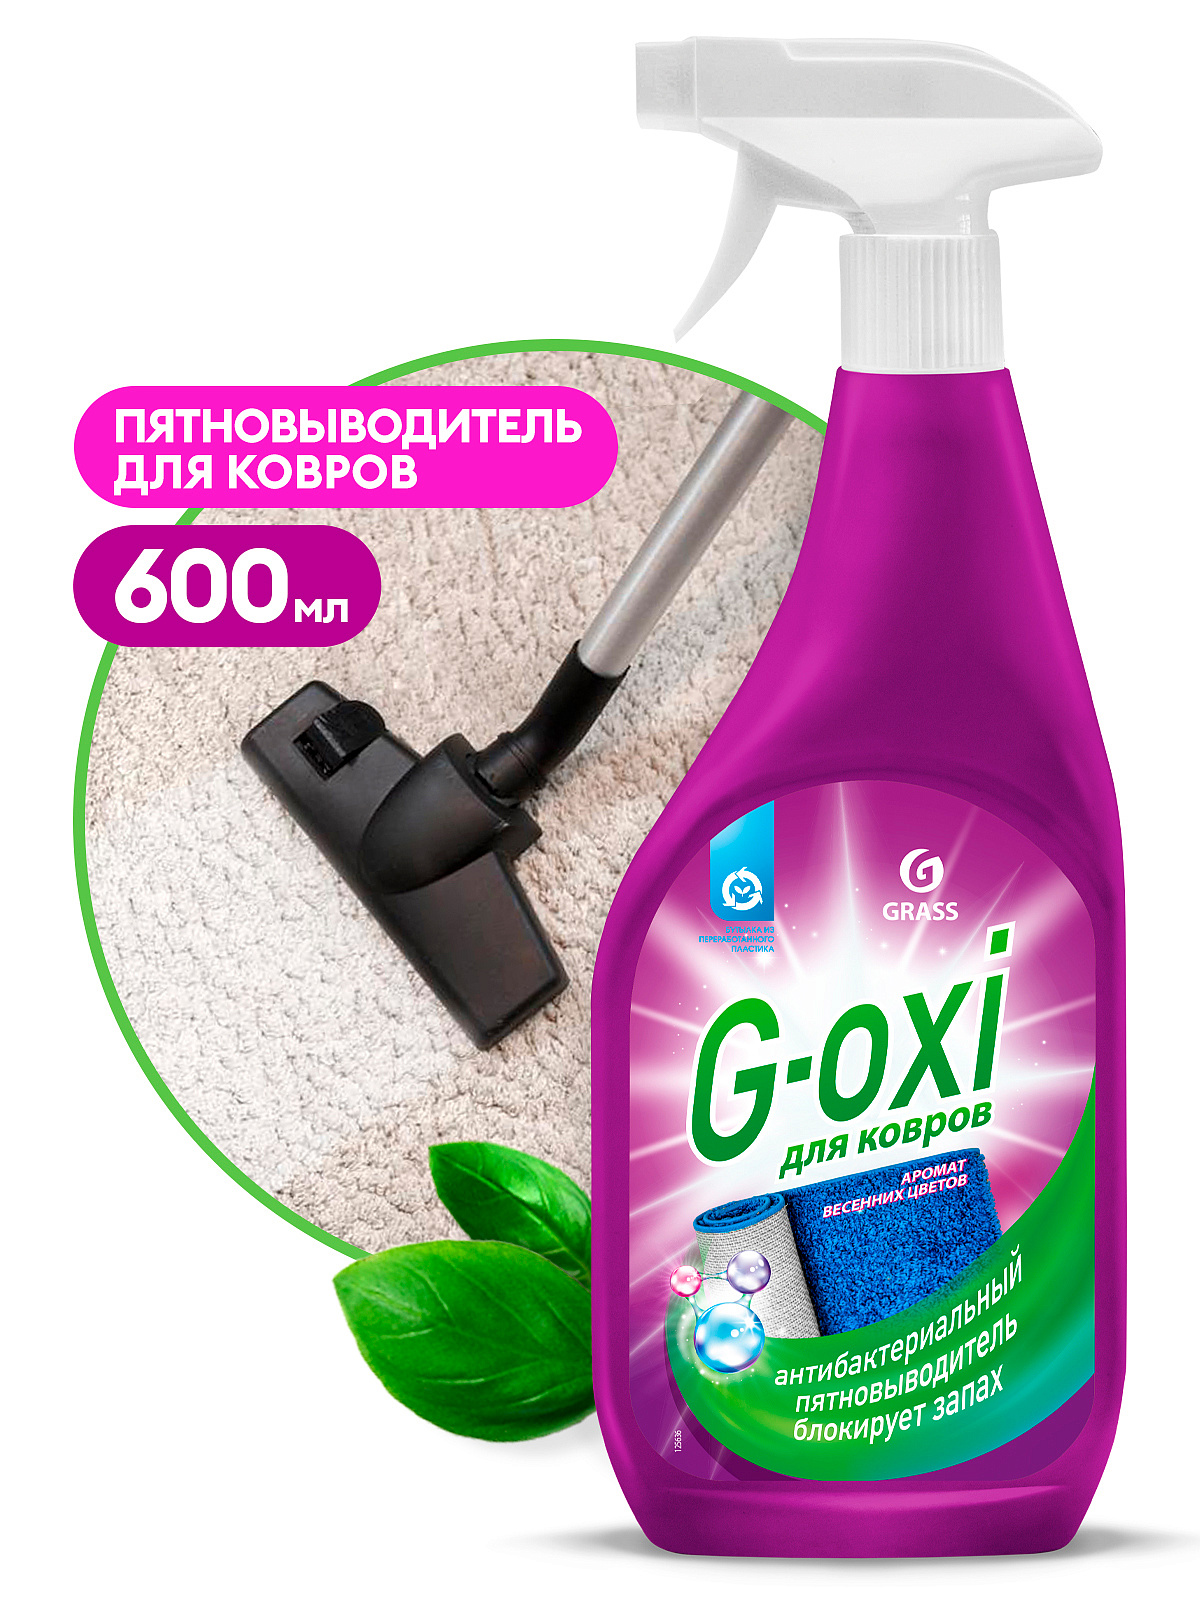 GRASS Пятновыводитель д/ковров с антибакт эффектом G-oxi весенние цветы 600 мл  